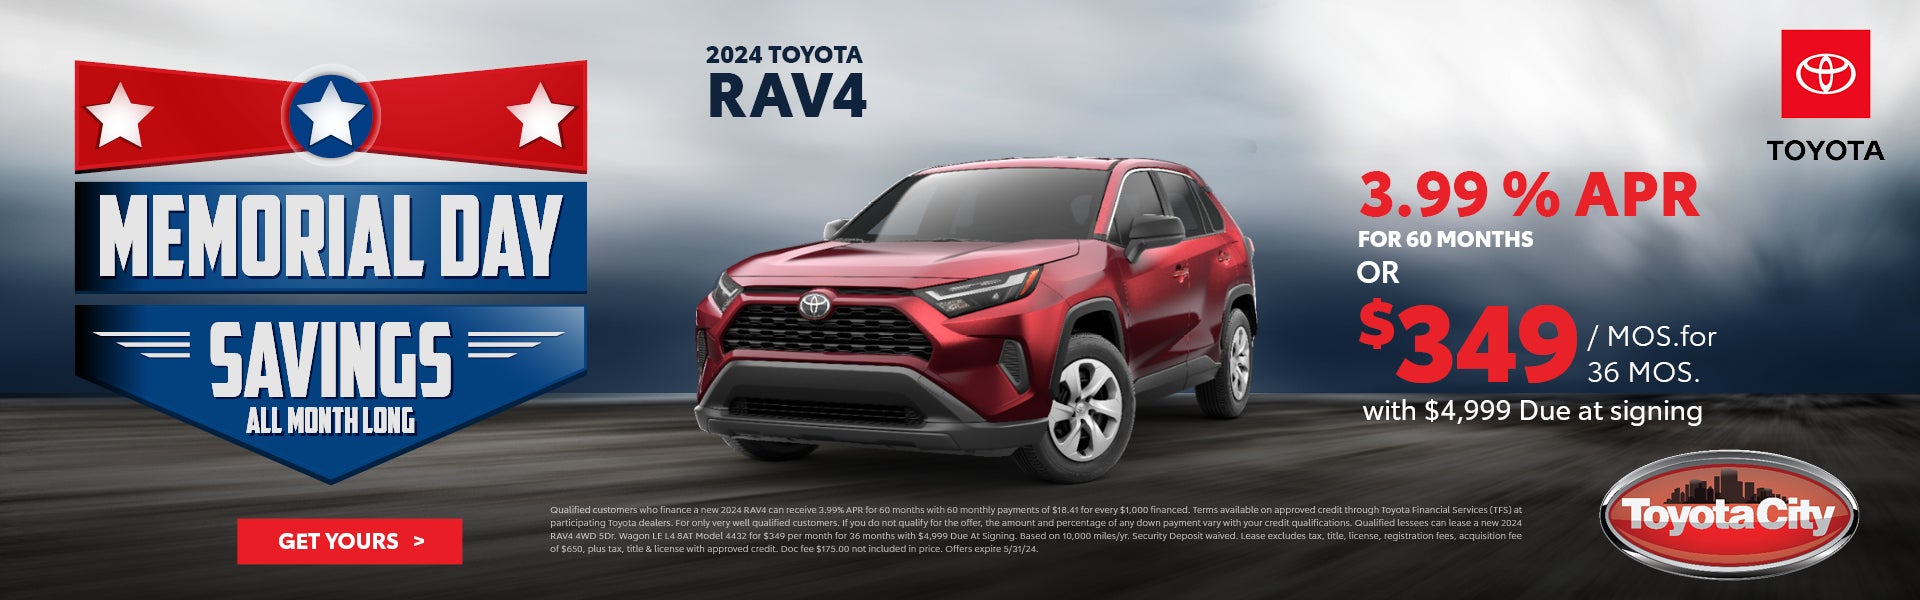 2024 Toyota Rav4